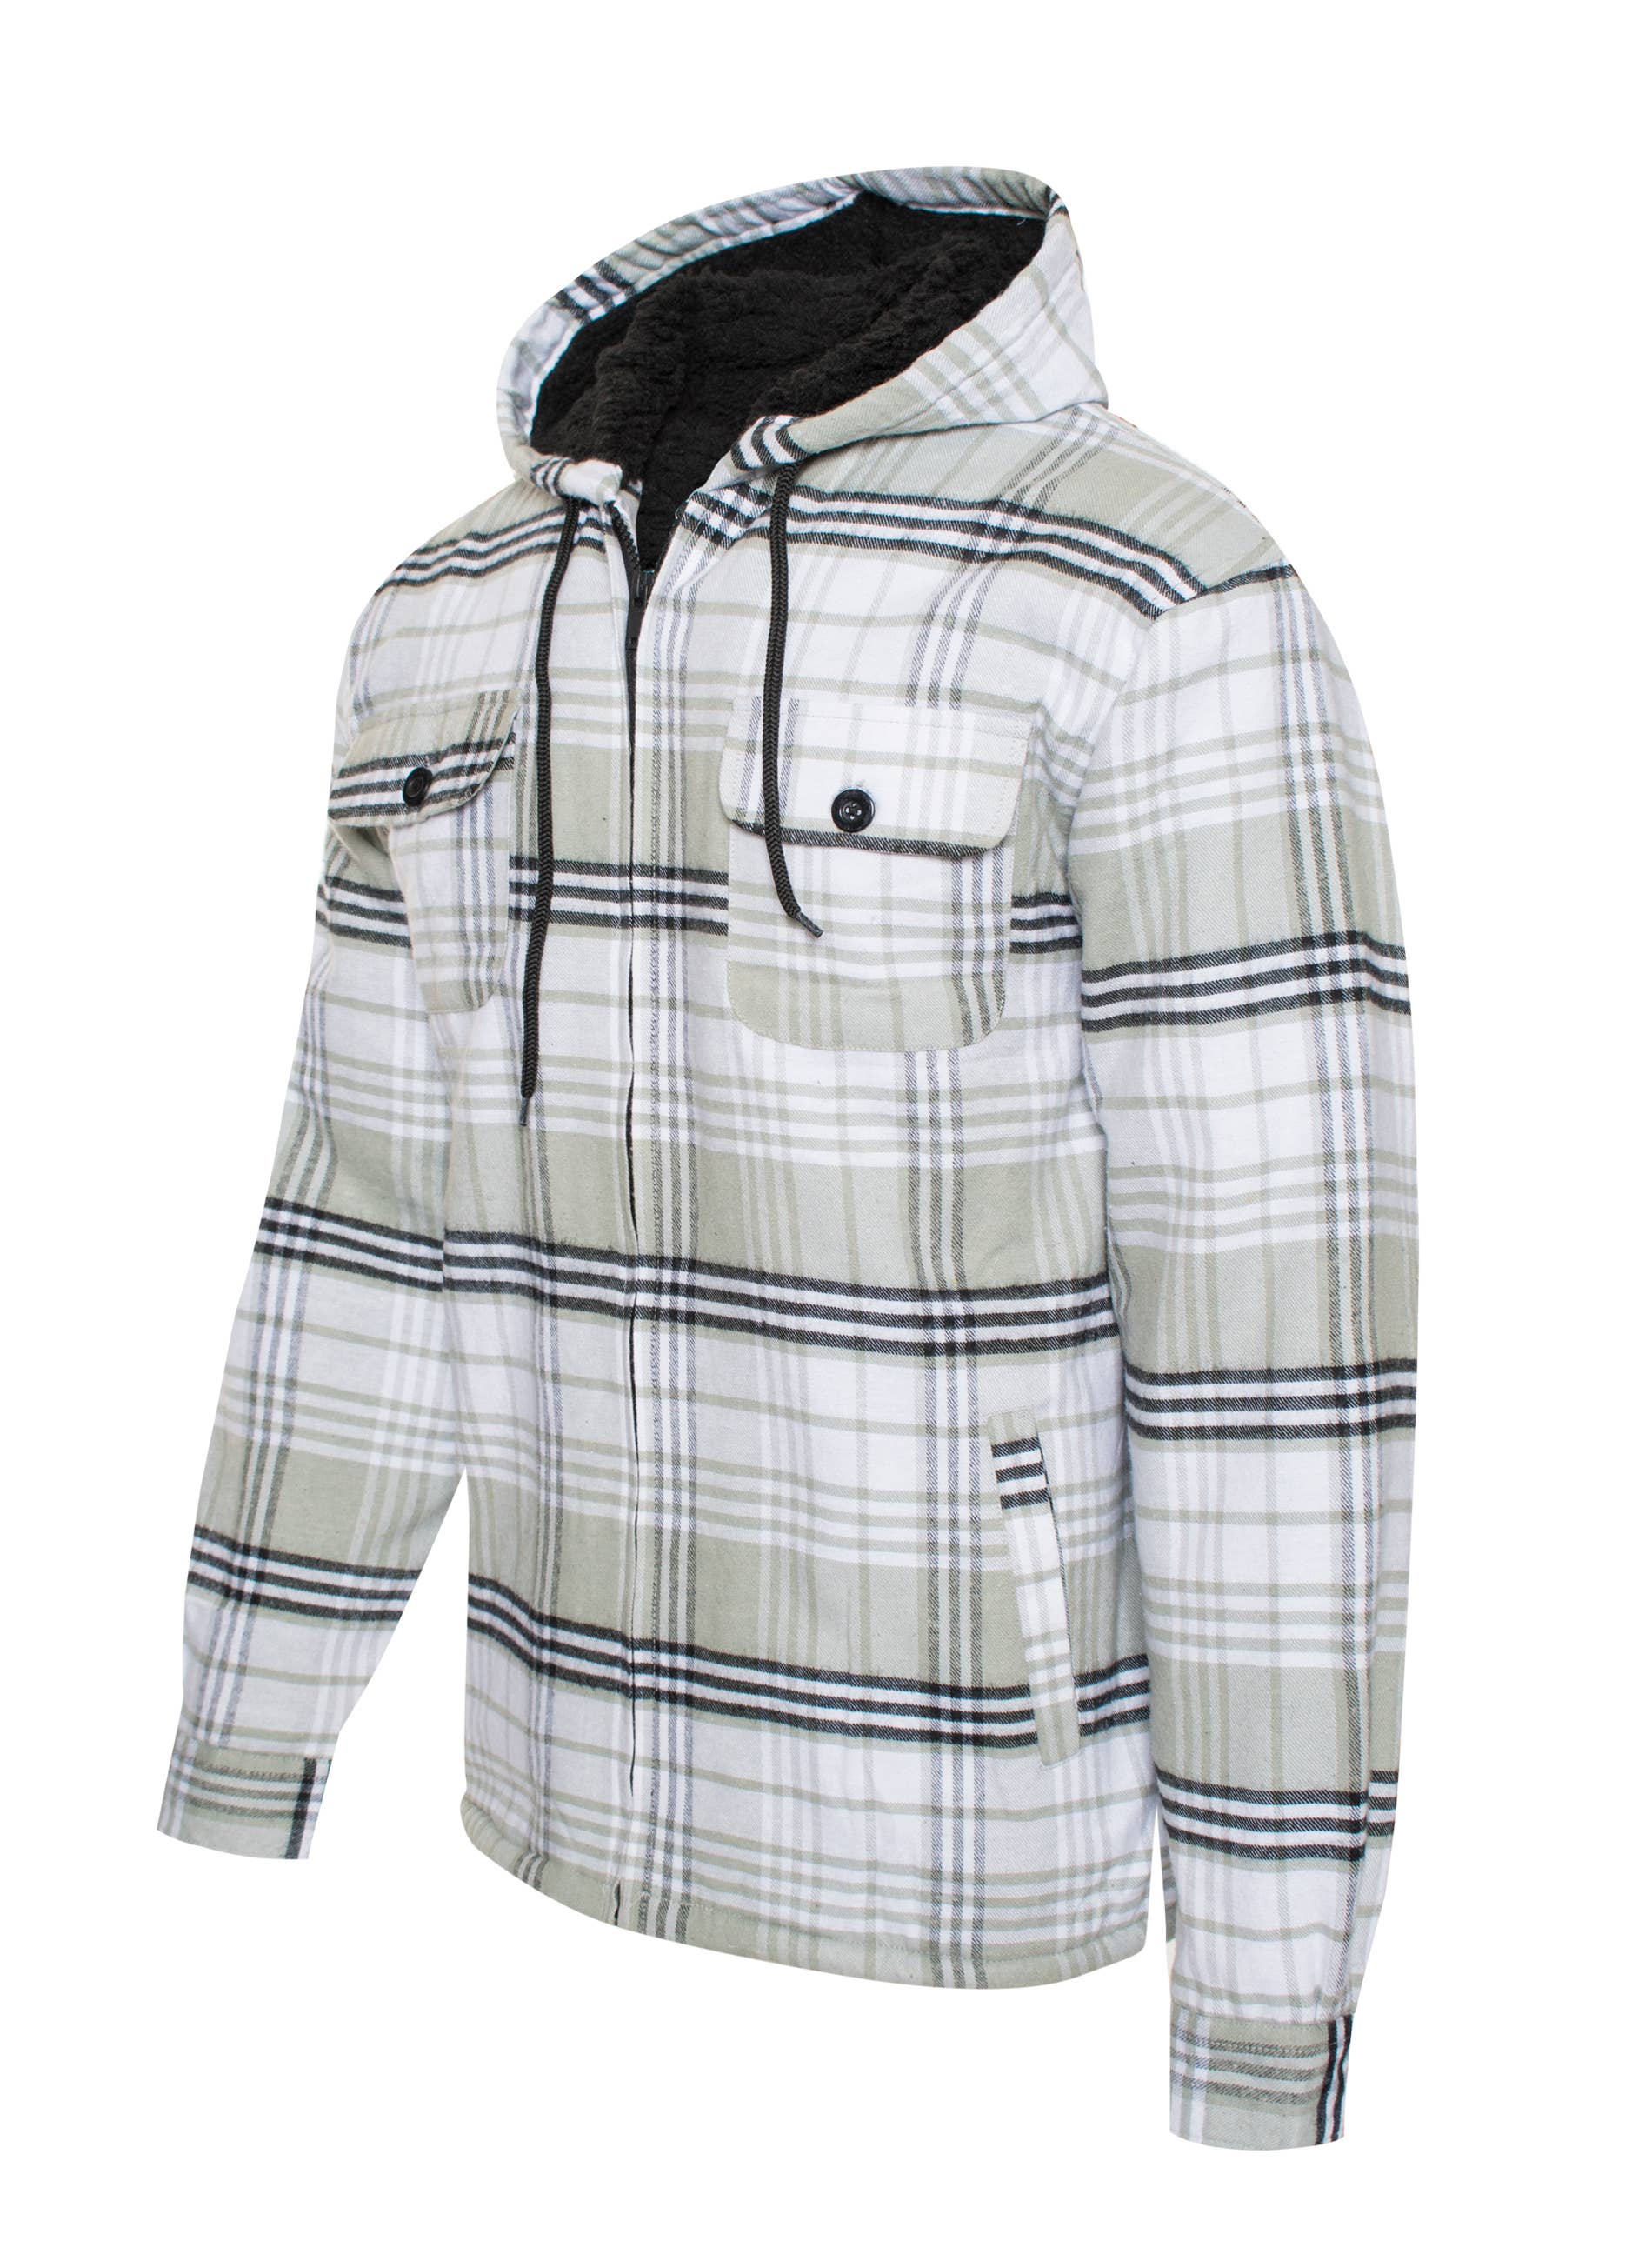 Generation XYZ - Men's Flannel Sherpa Lined Jacket - Grey